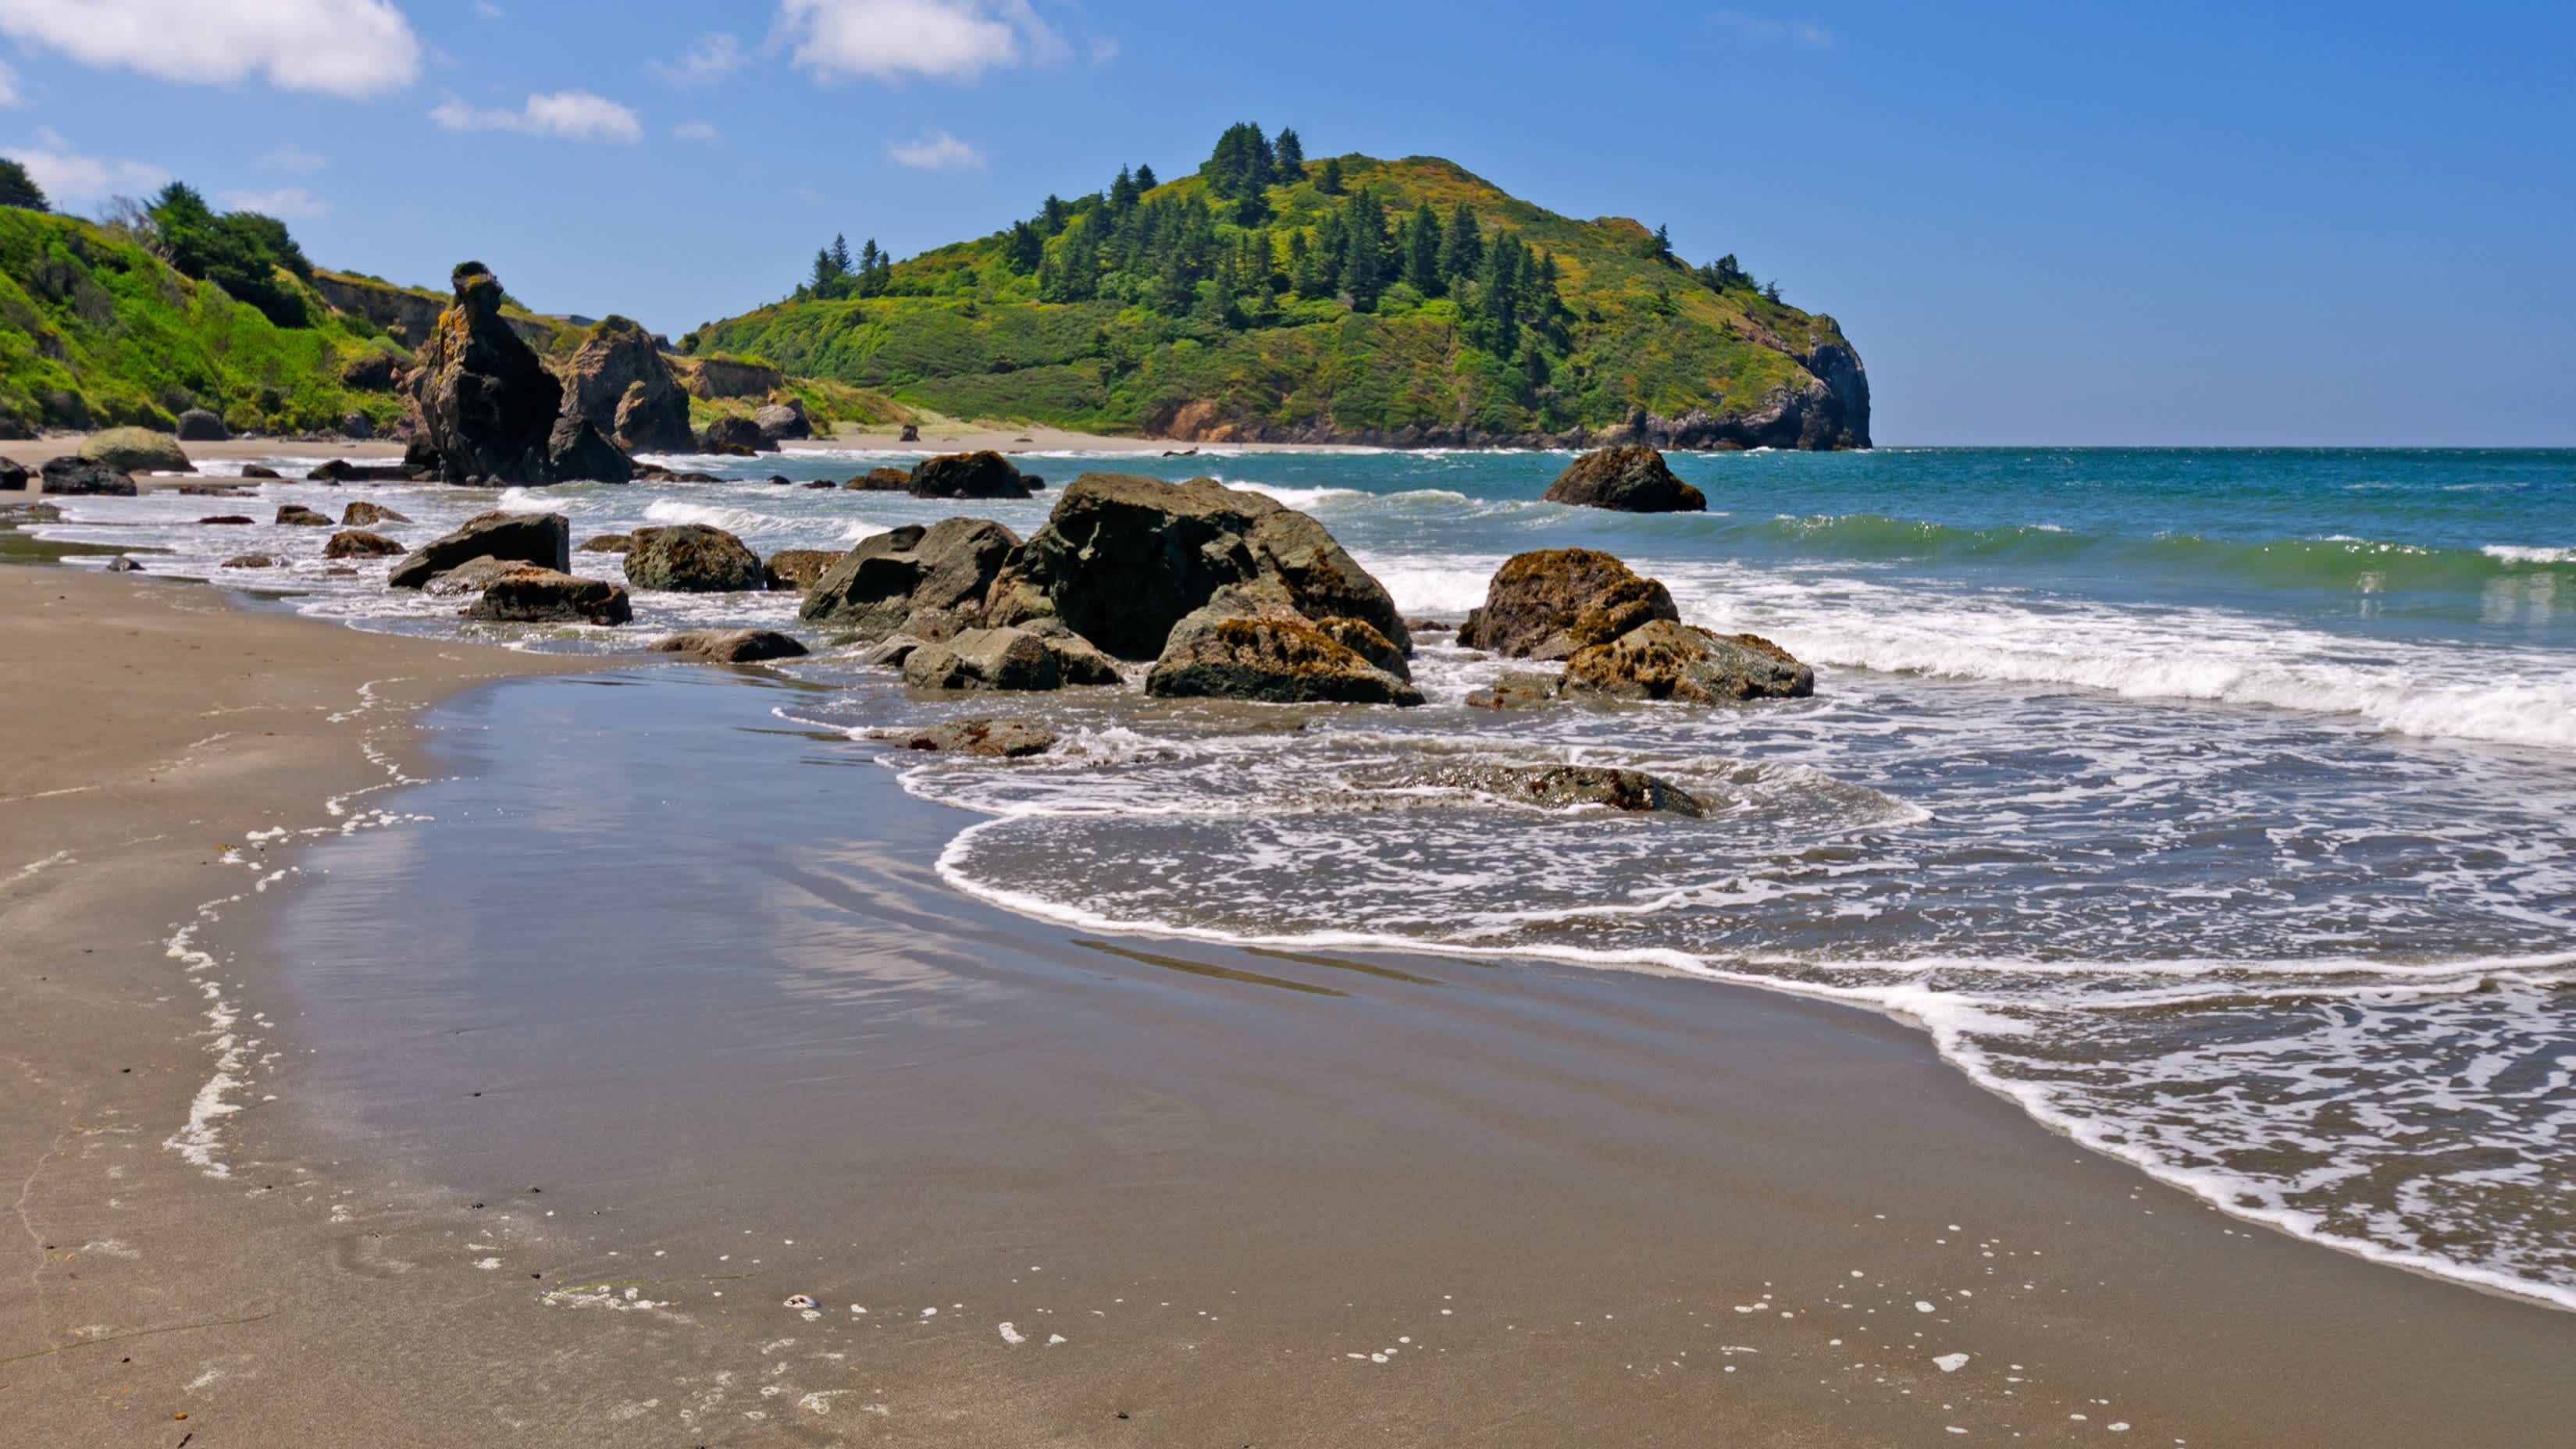 Der natürliche Strand Trinidad State Beach, Humboldt County, Kalifornien, USA bei herrlichem Sonnenschein und mit Blick auf Felsen, das seichte Wasser sowie grünen Hügeln.